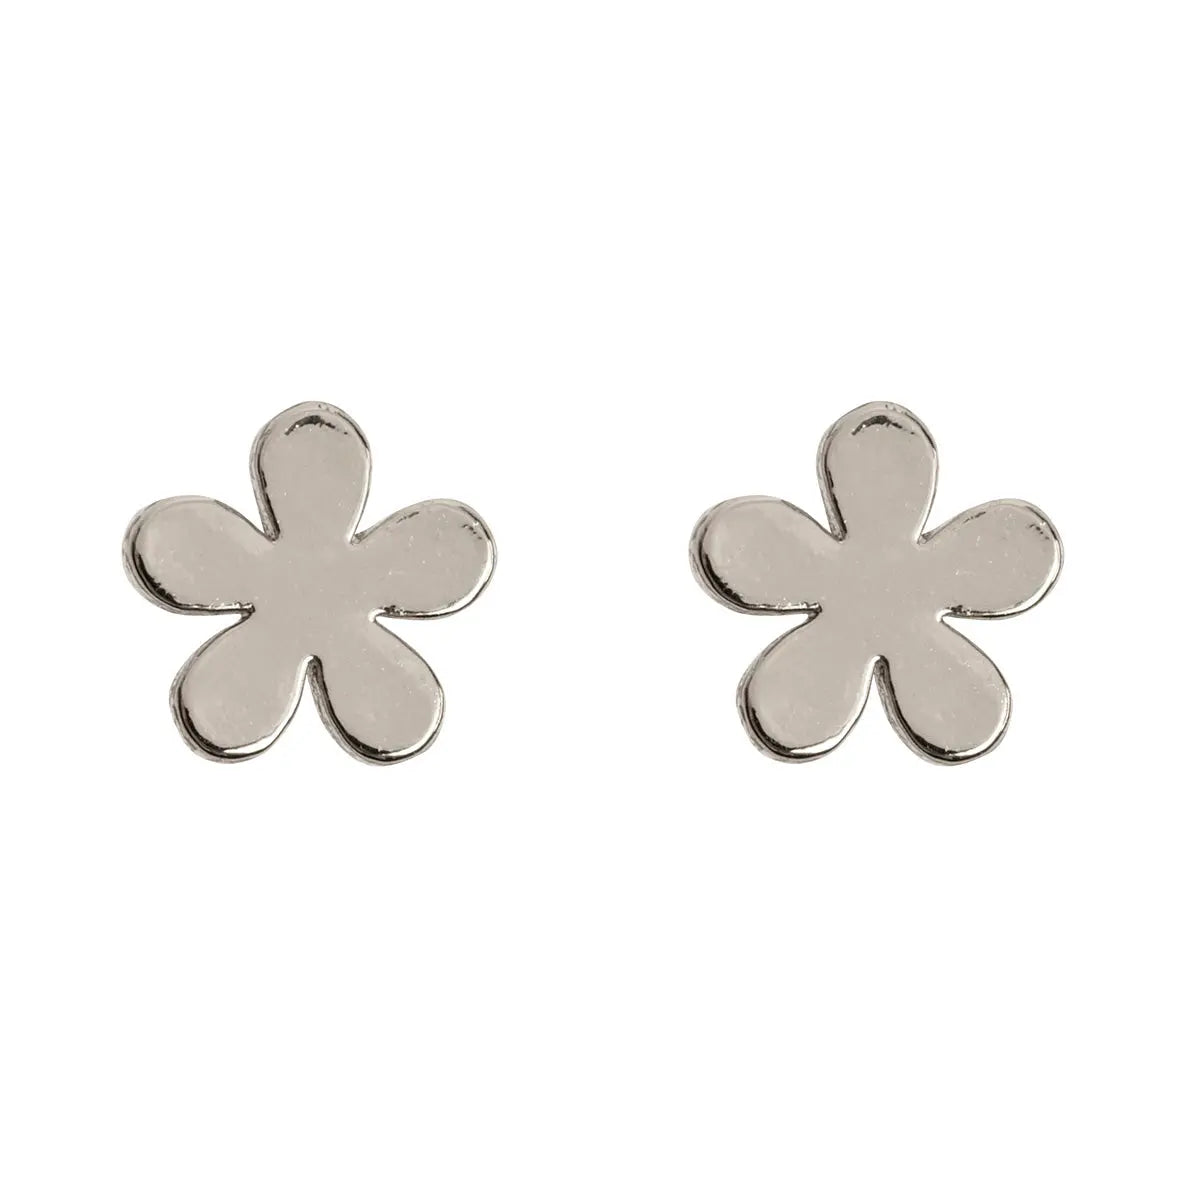 Minimalistic flower stud earrings silver